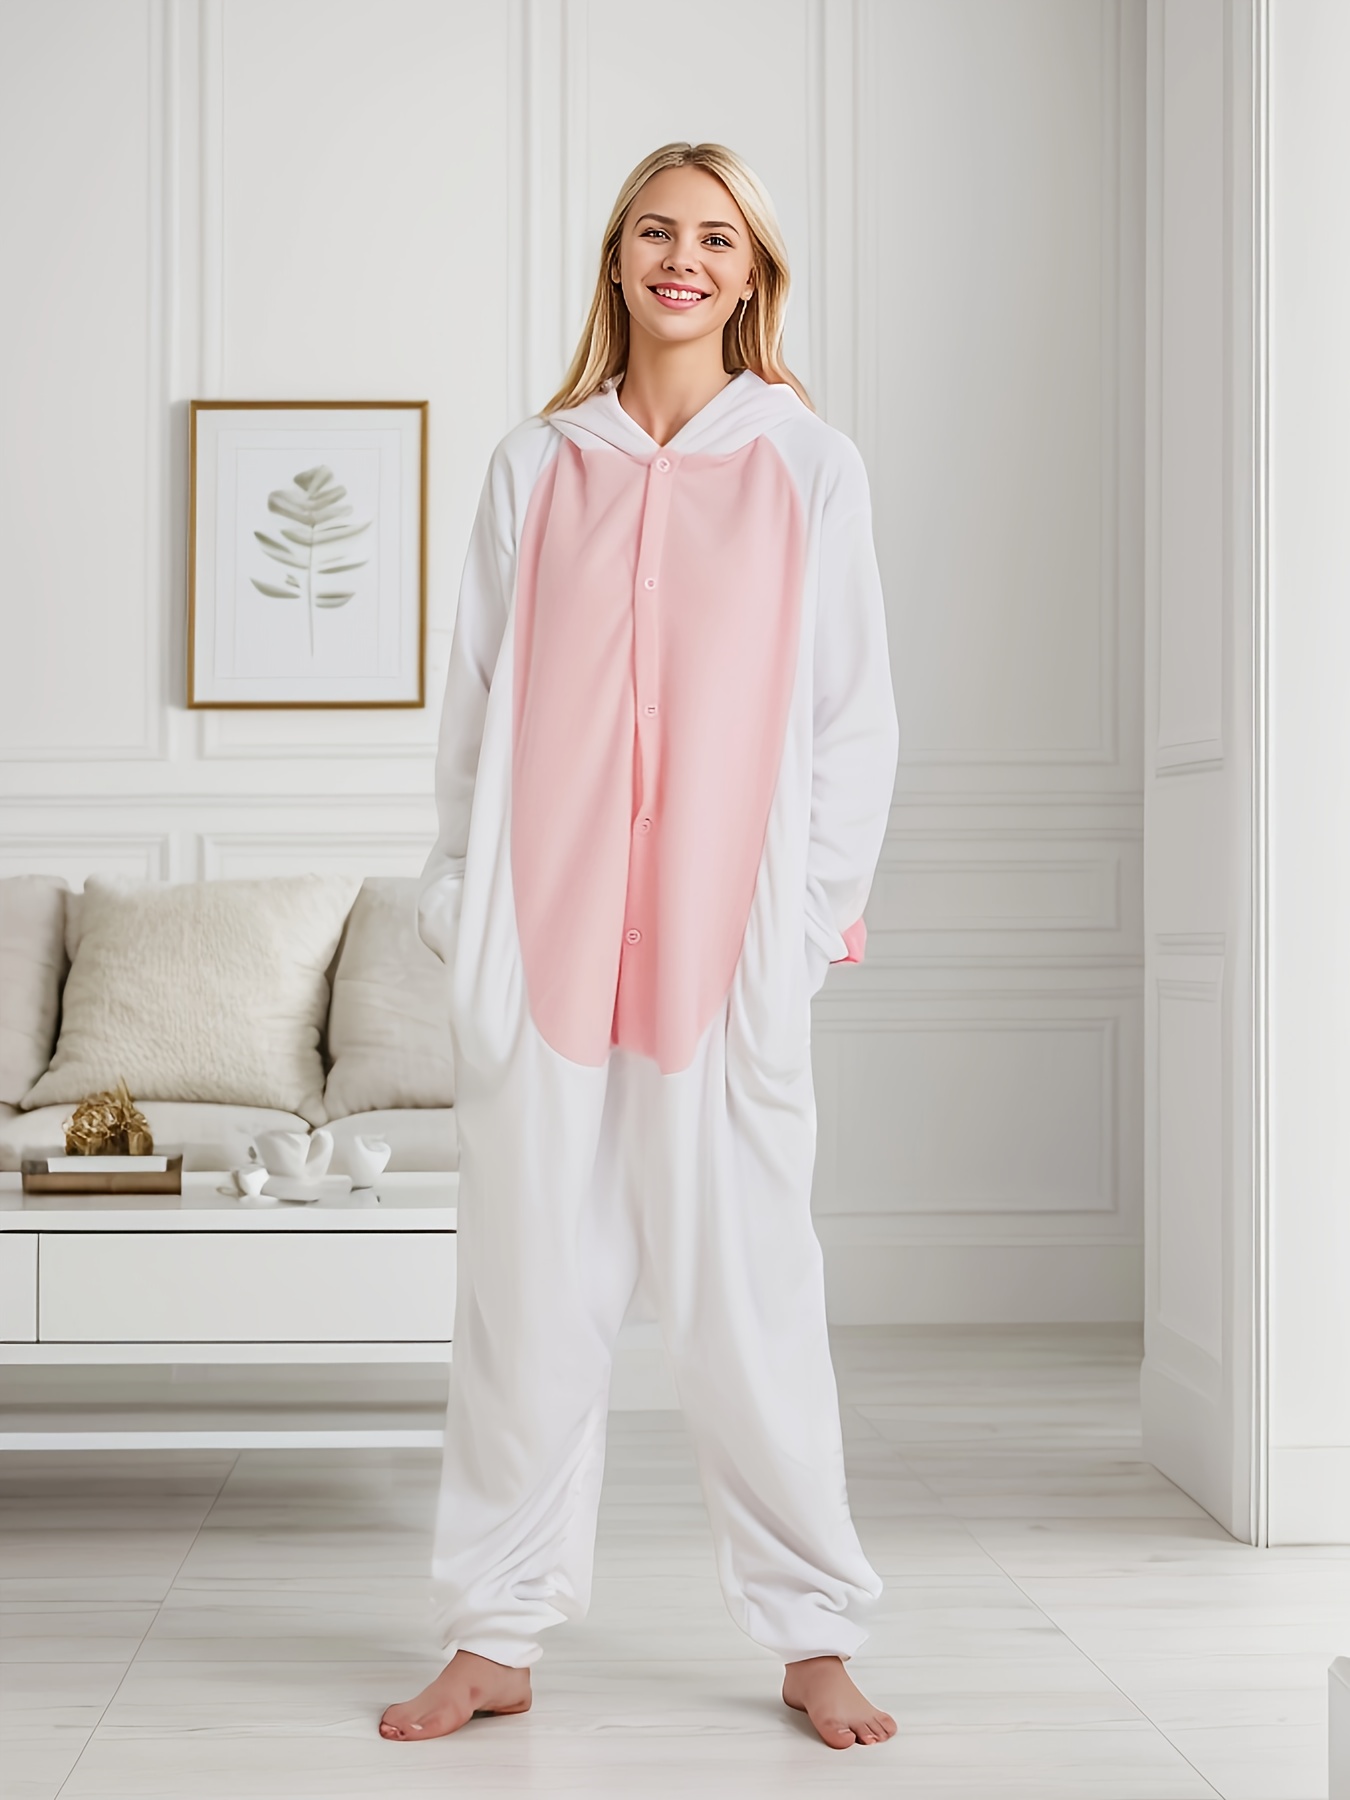 Bunny Girl Lingerie Pajamas